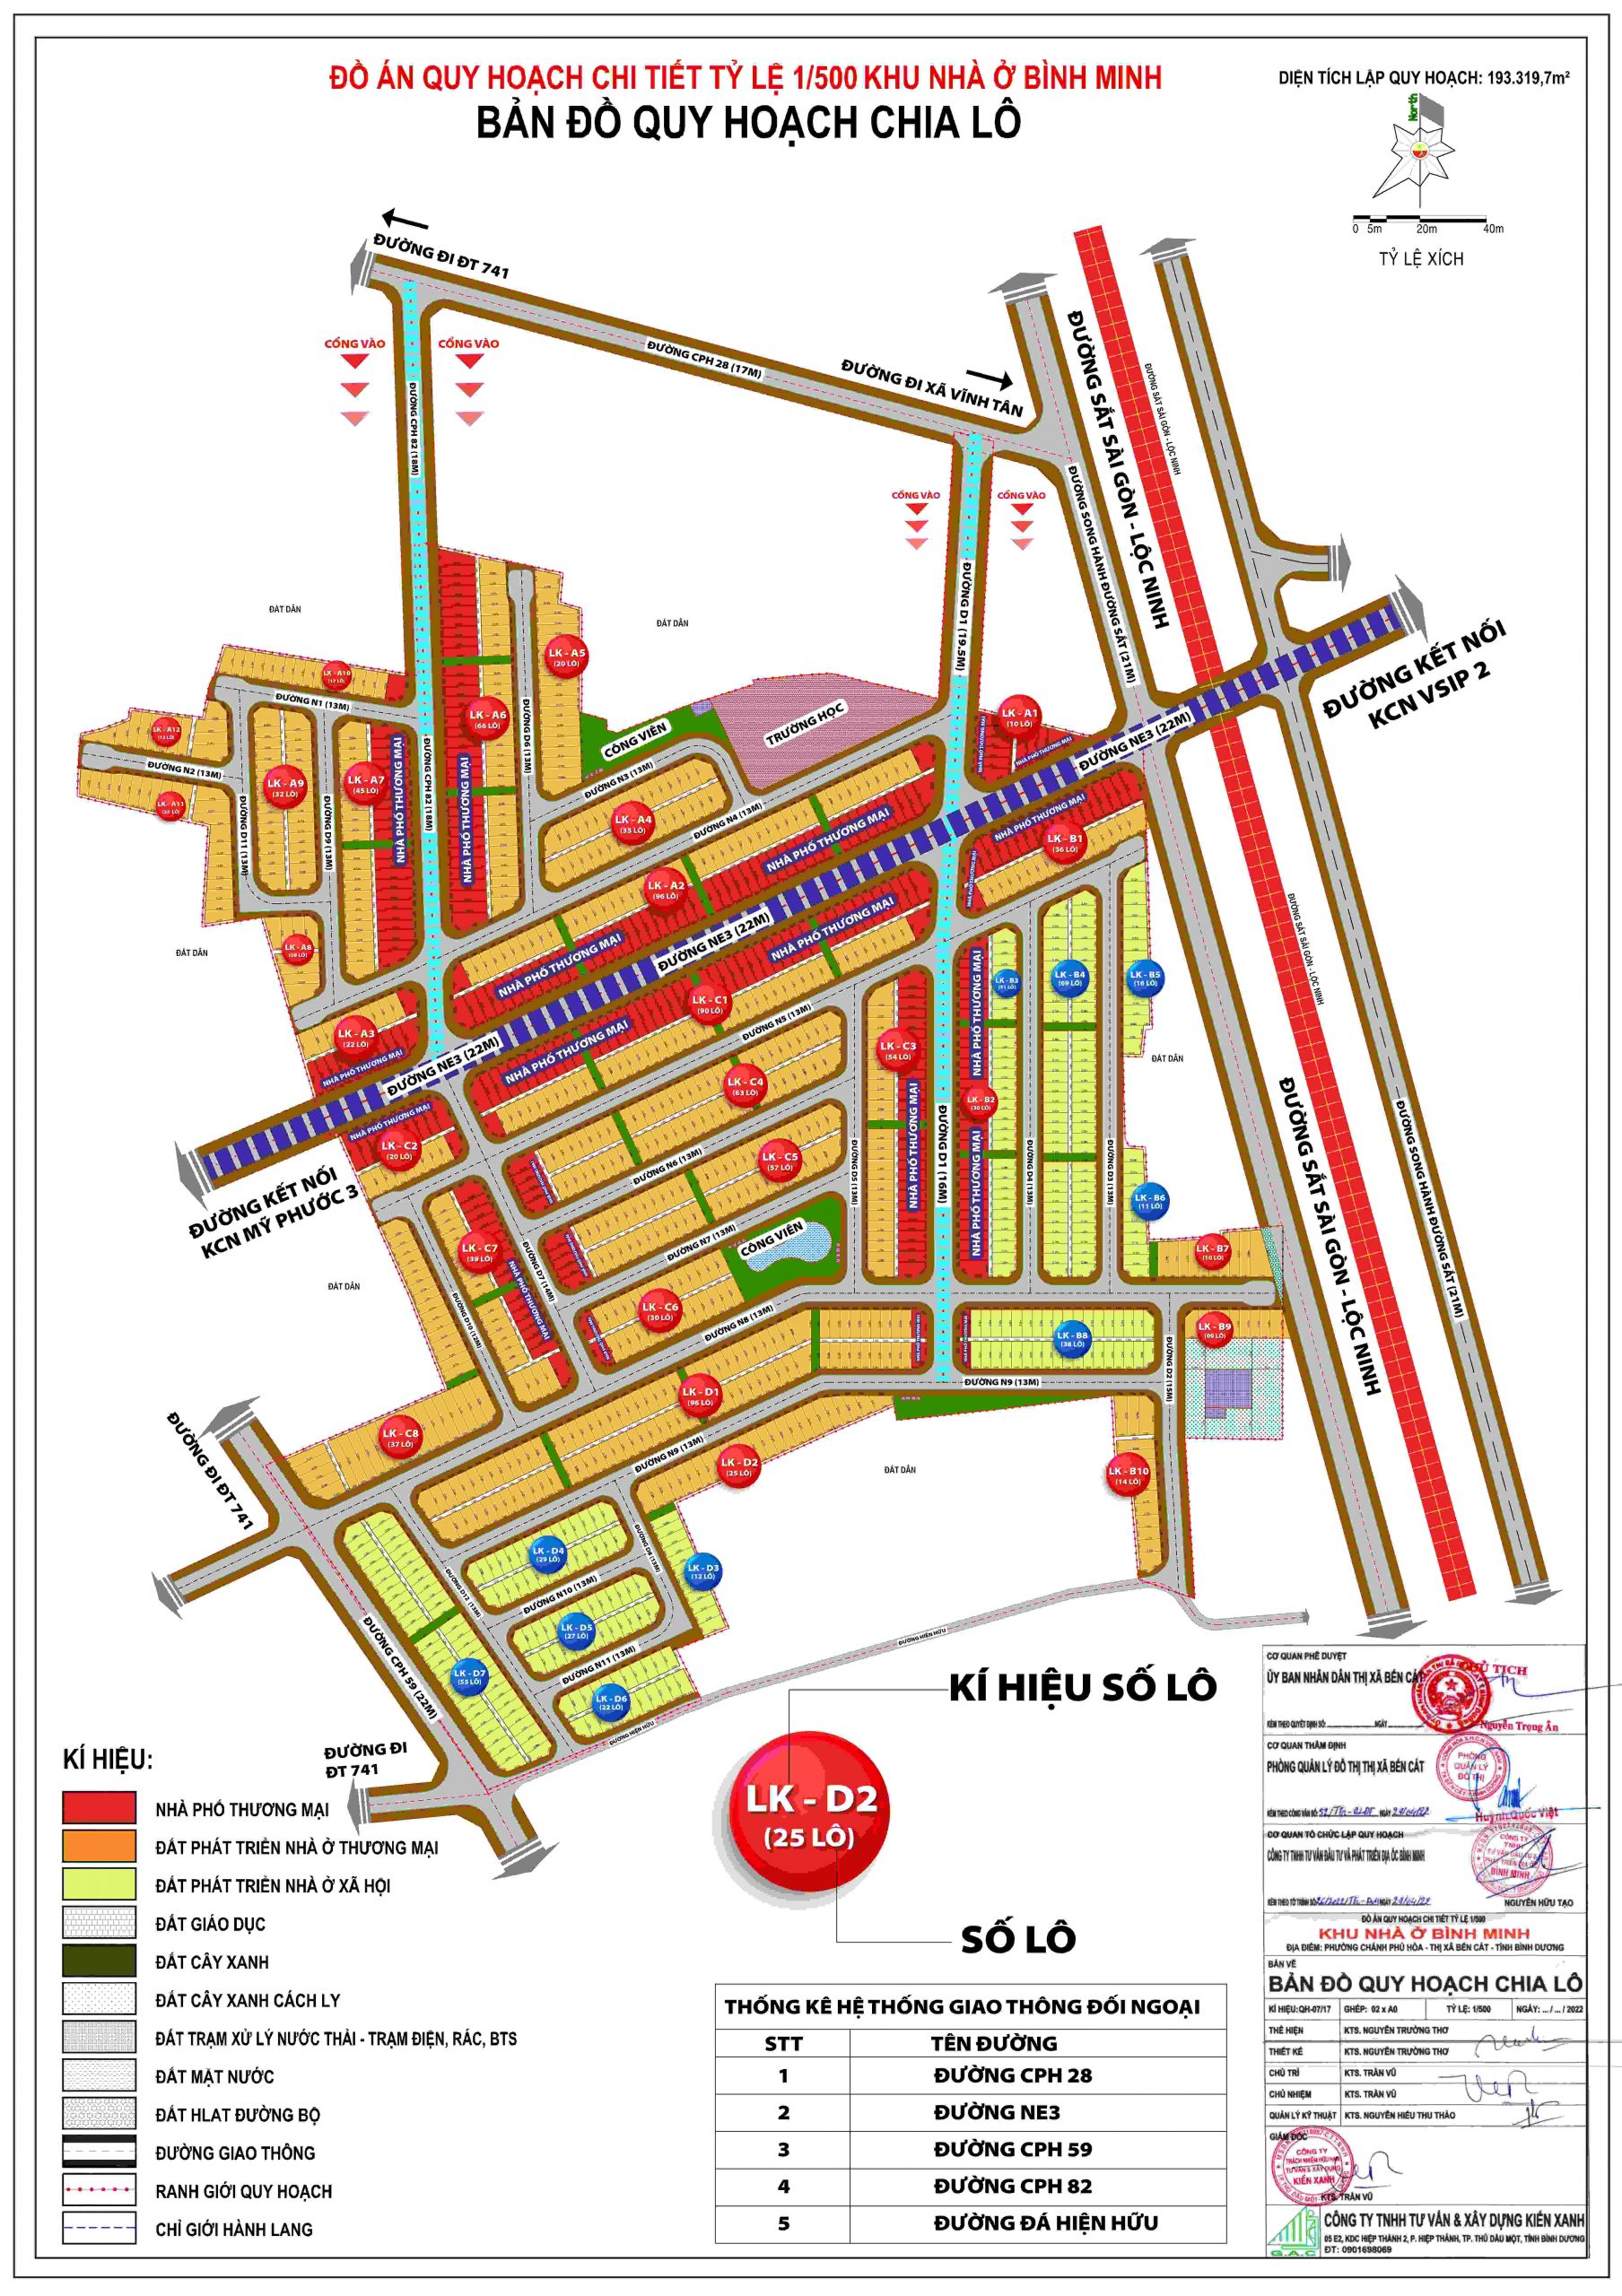 Quy hoạch khu vực xây dựng khu nhà ở Bình Minh